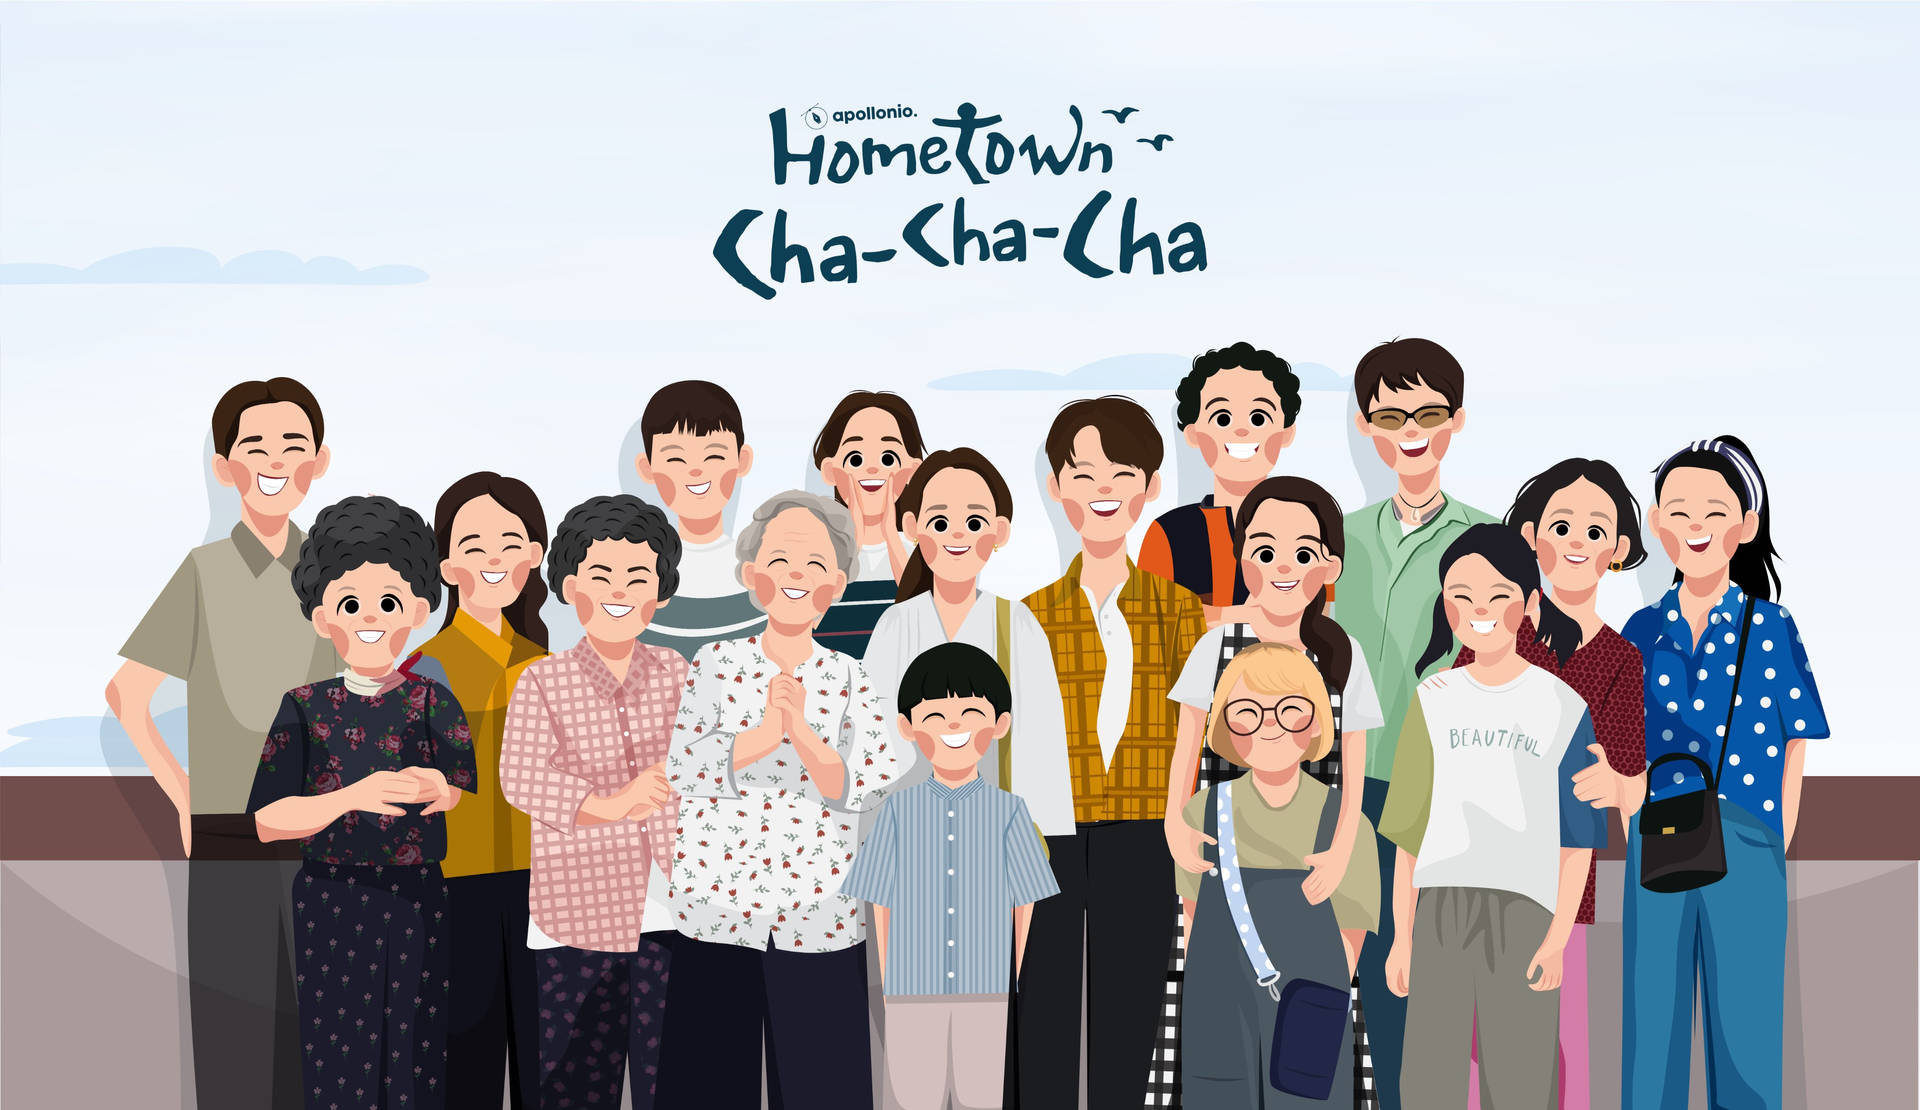 Hometown Cha Cha Cha Full Cast Wallpaper